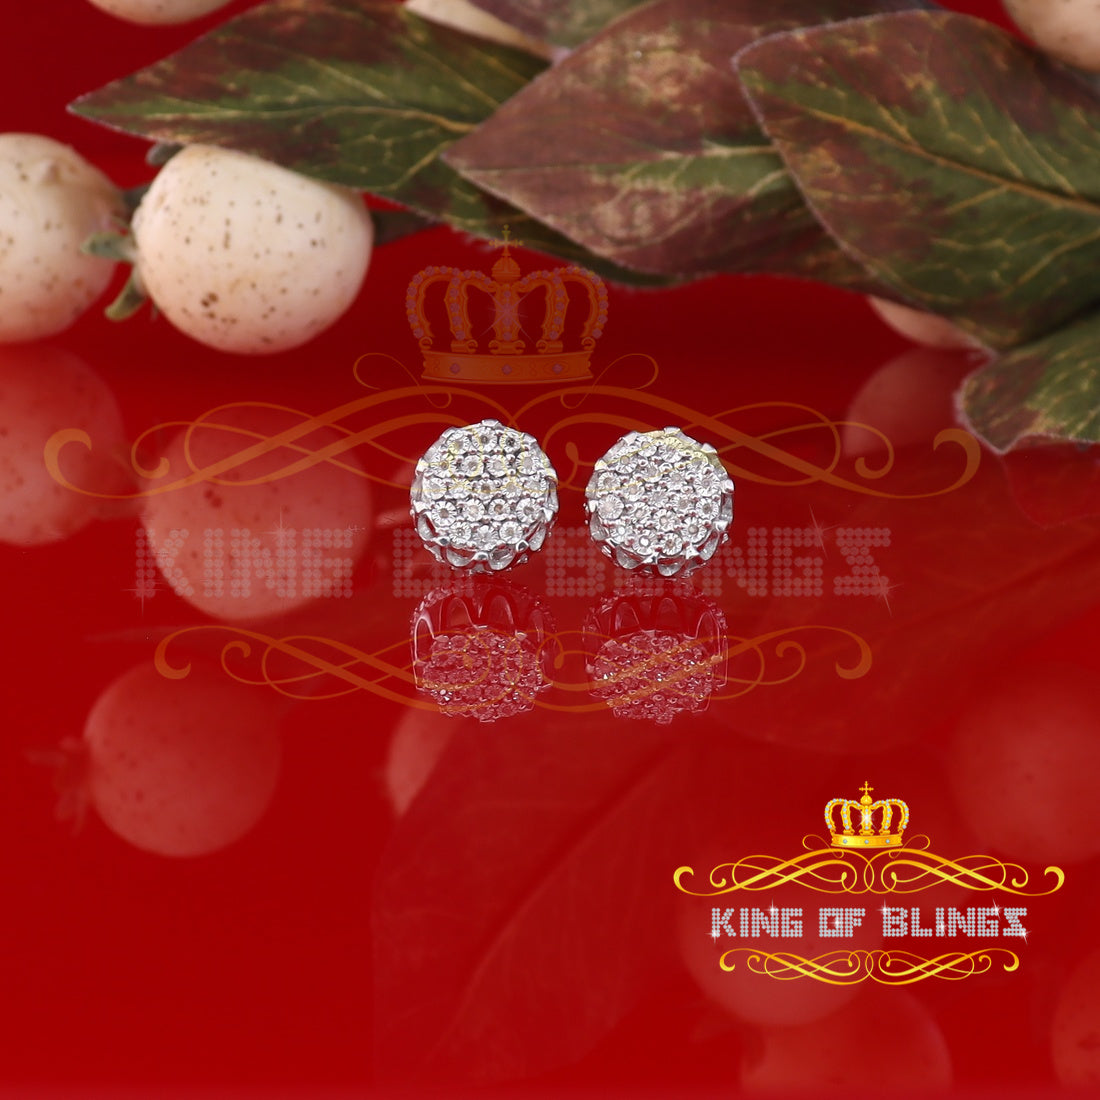 King Of Bling's 925 Sterling White Silver 0.10ct Diamond Flower Earrings For Women's & Men's